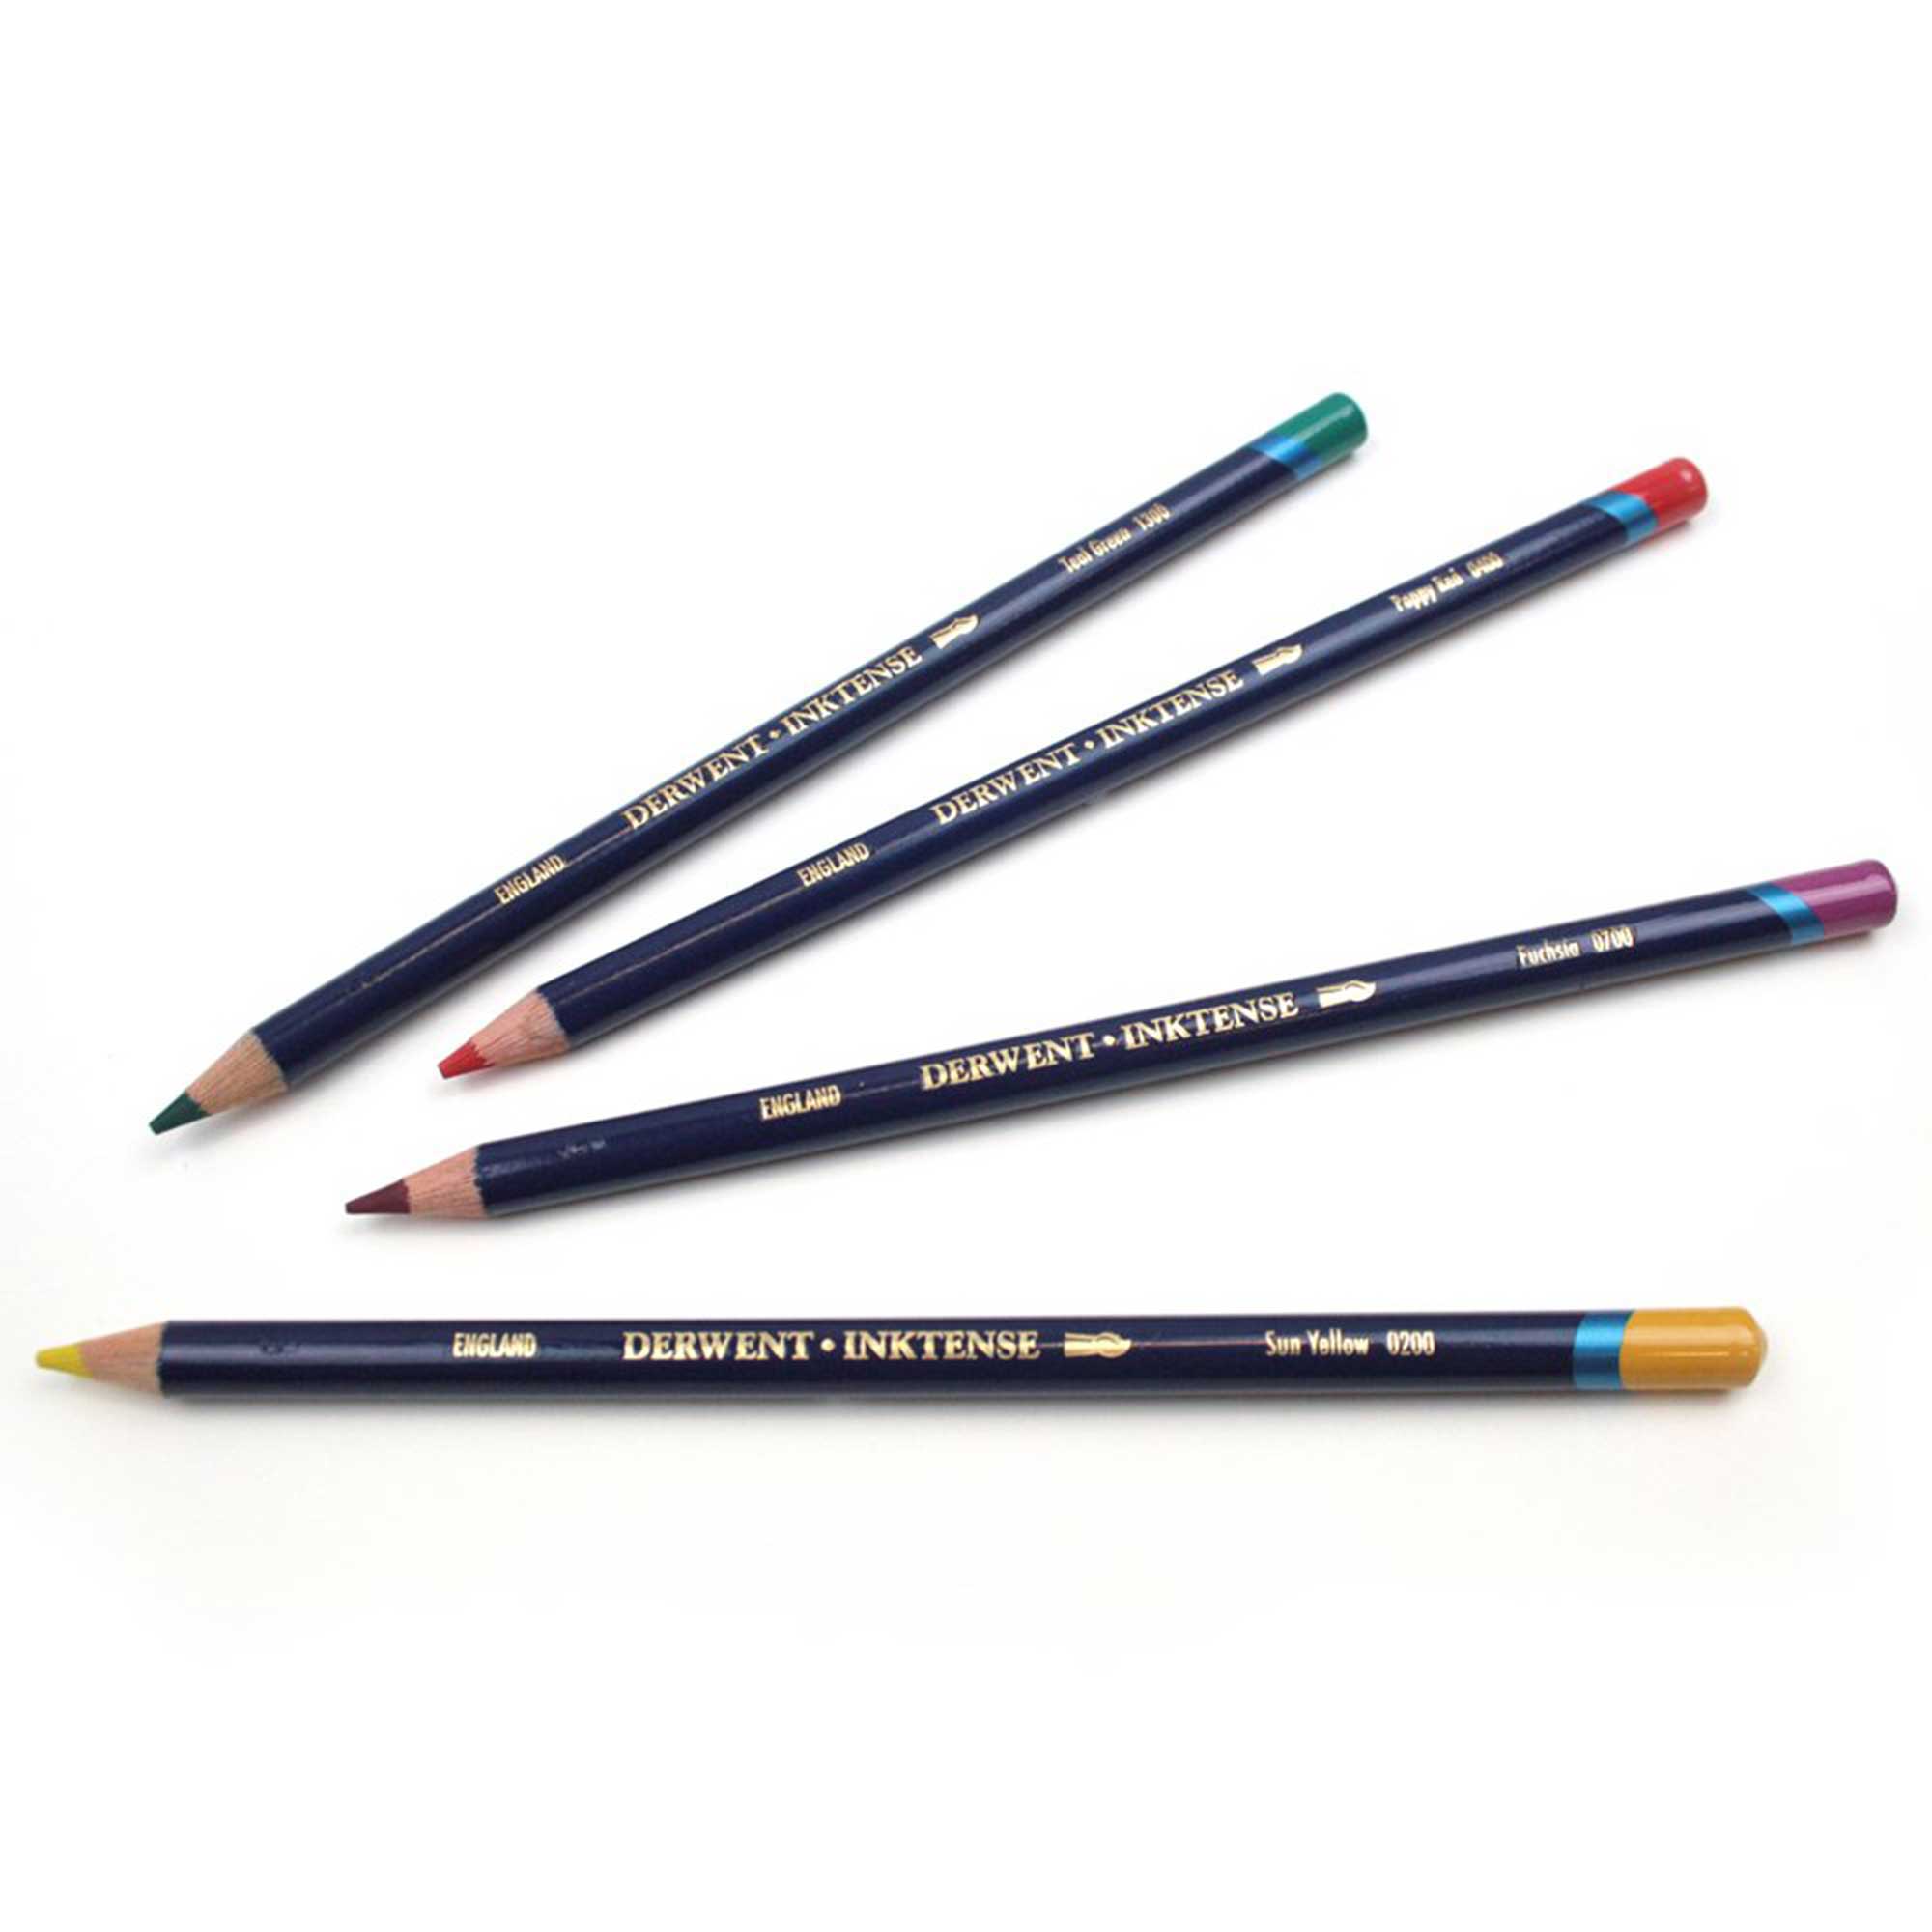 Derwent Inktense Individual Pencils